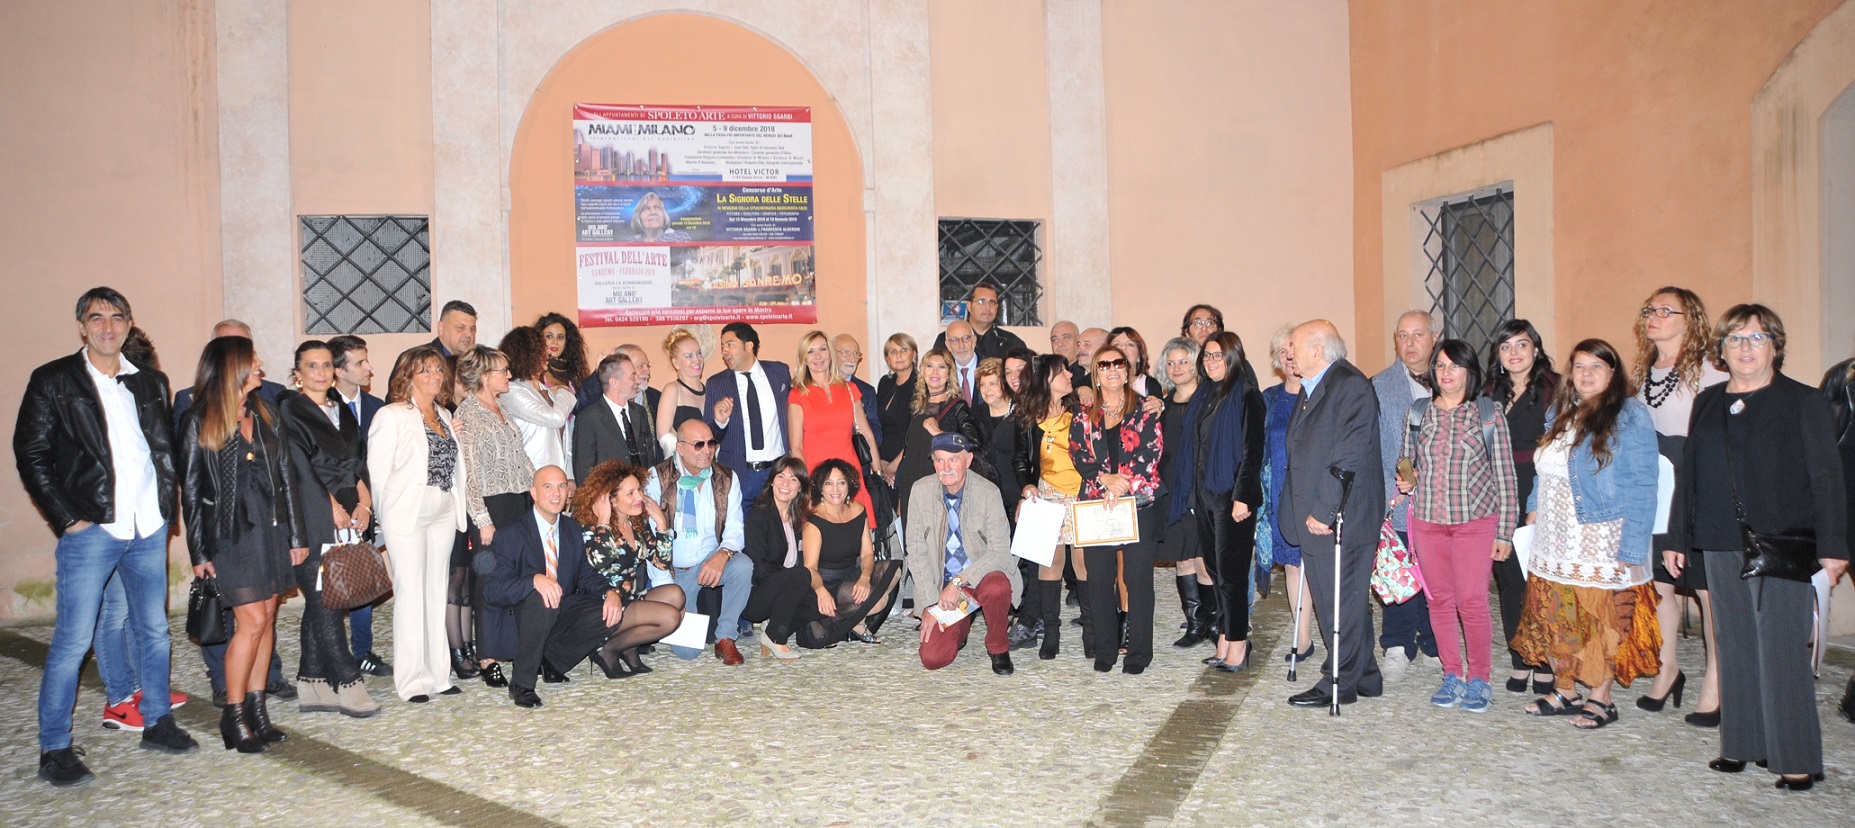 Foto 1 - Spoleto: l’emozionante cerimonia del Premio Modigliani e il via alla mostra